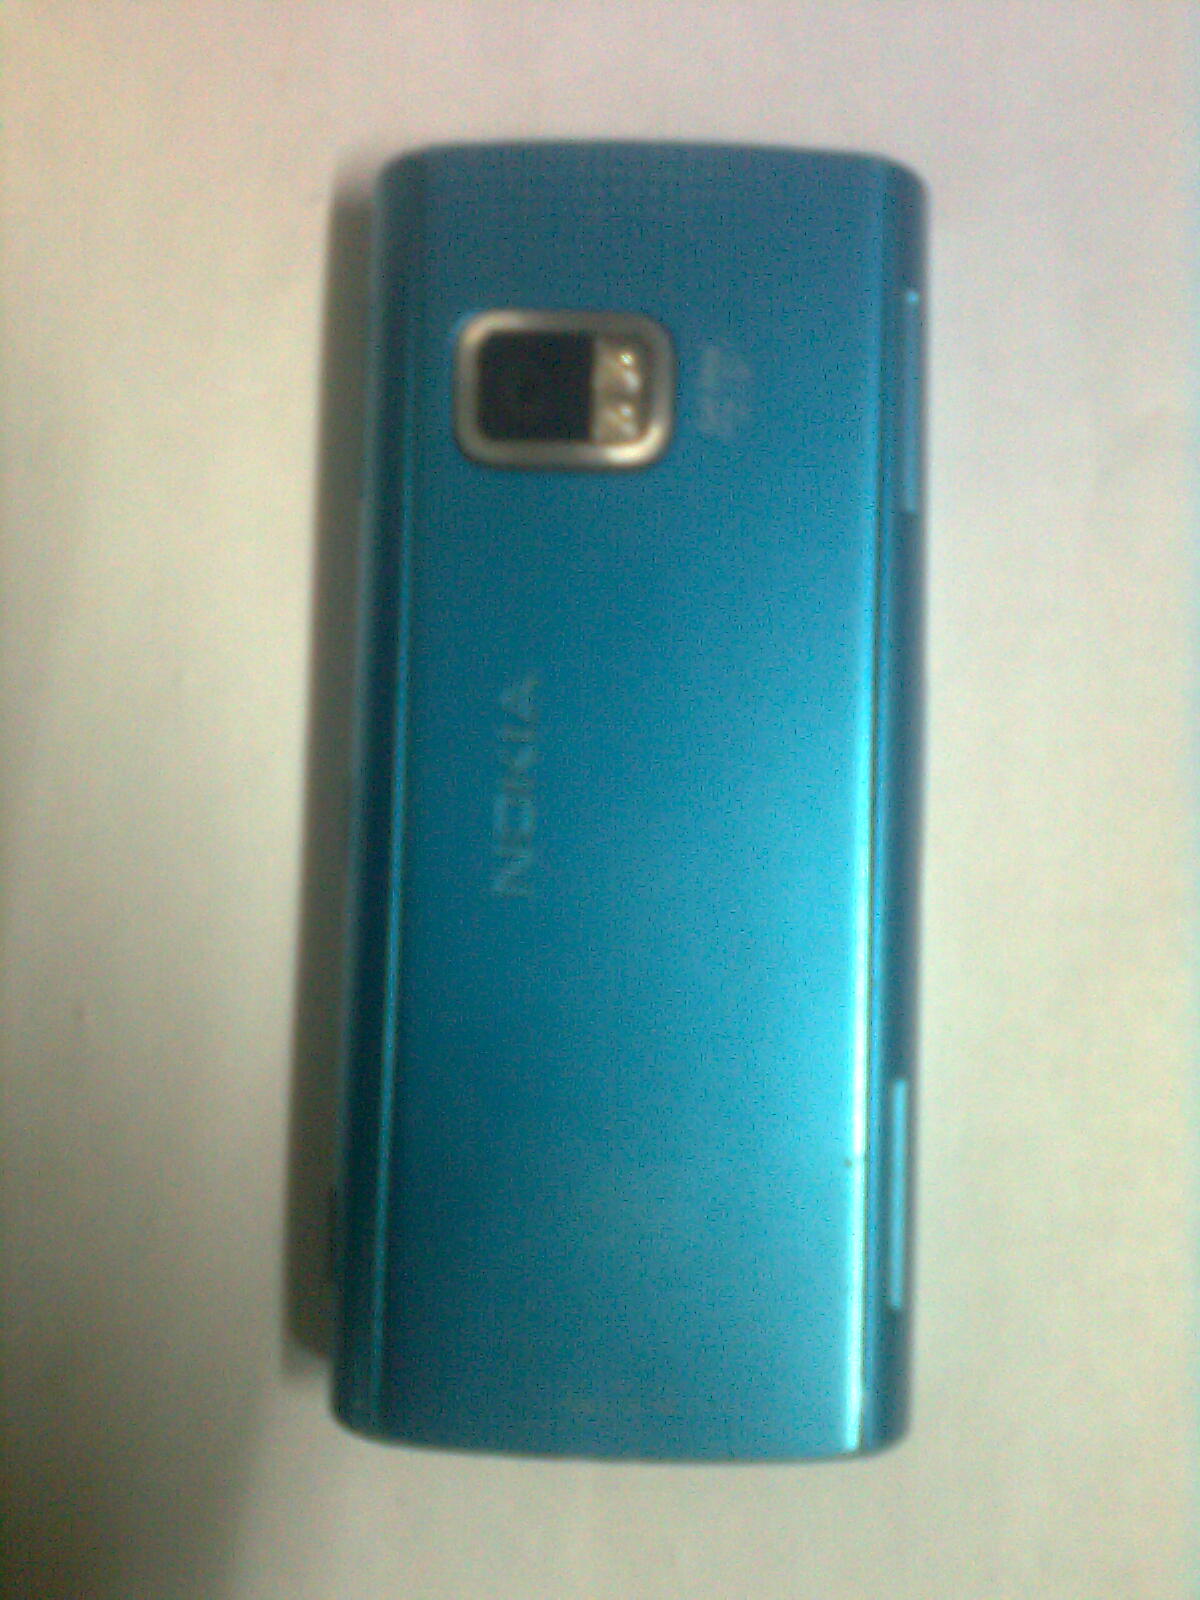 Nokia X6 only 14000Tk large image 1